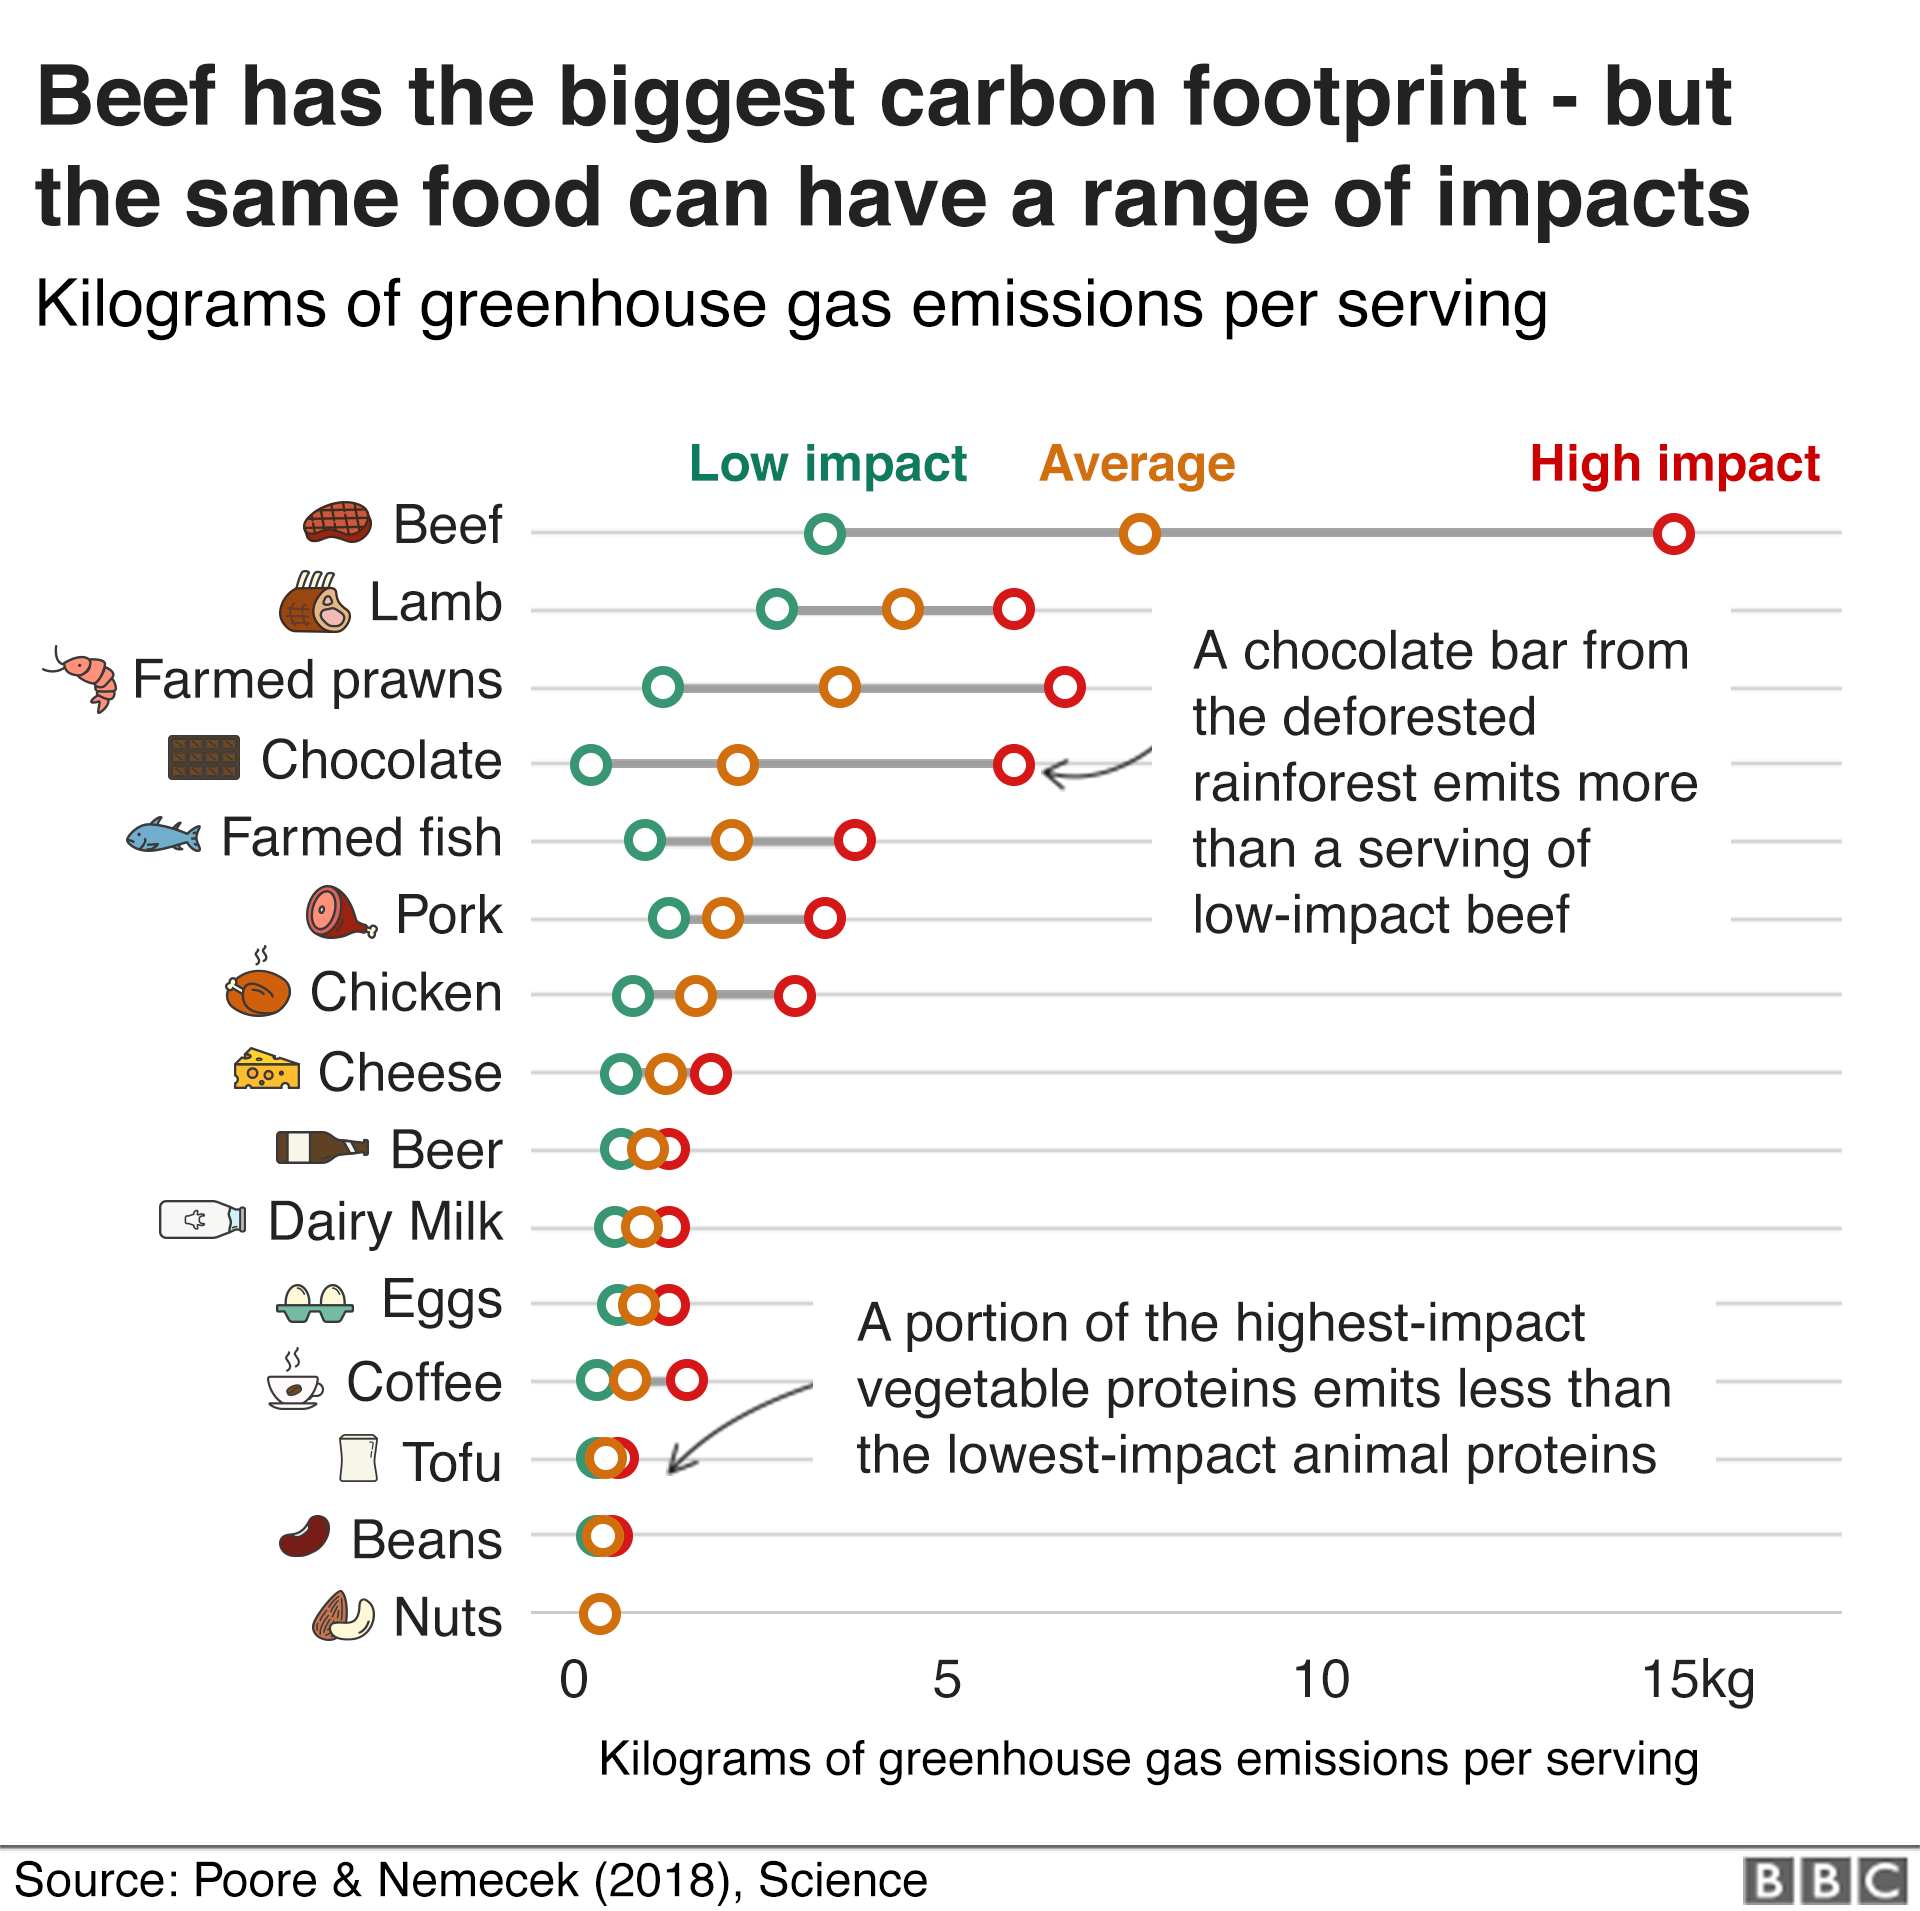 Диаграмма, показывающая влияние различных продуктов питания на климат: Говядина имеет самый высокий углеродный след, но одна и та же пища может иметь очень разные последствия